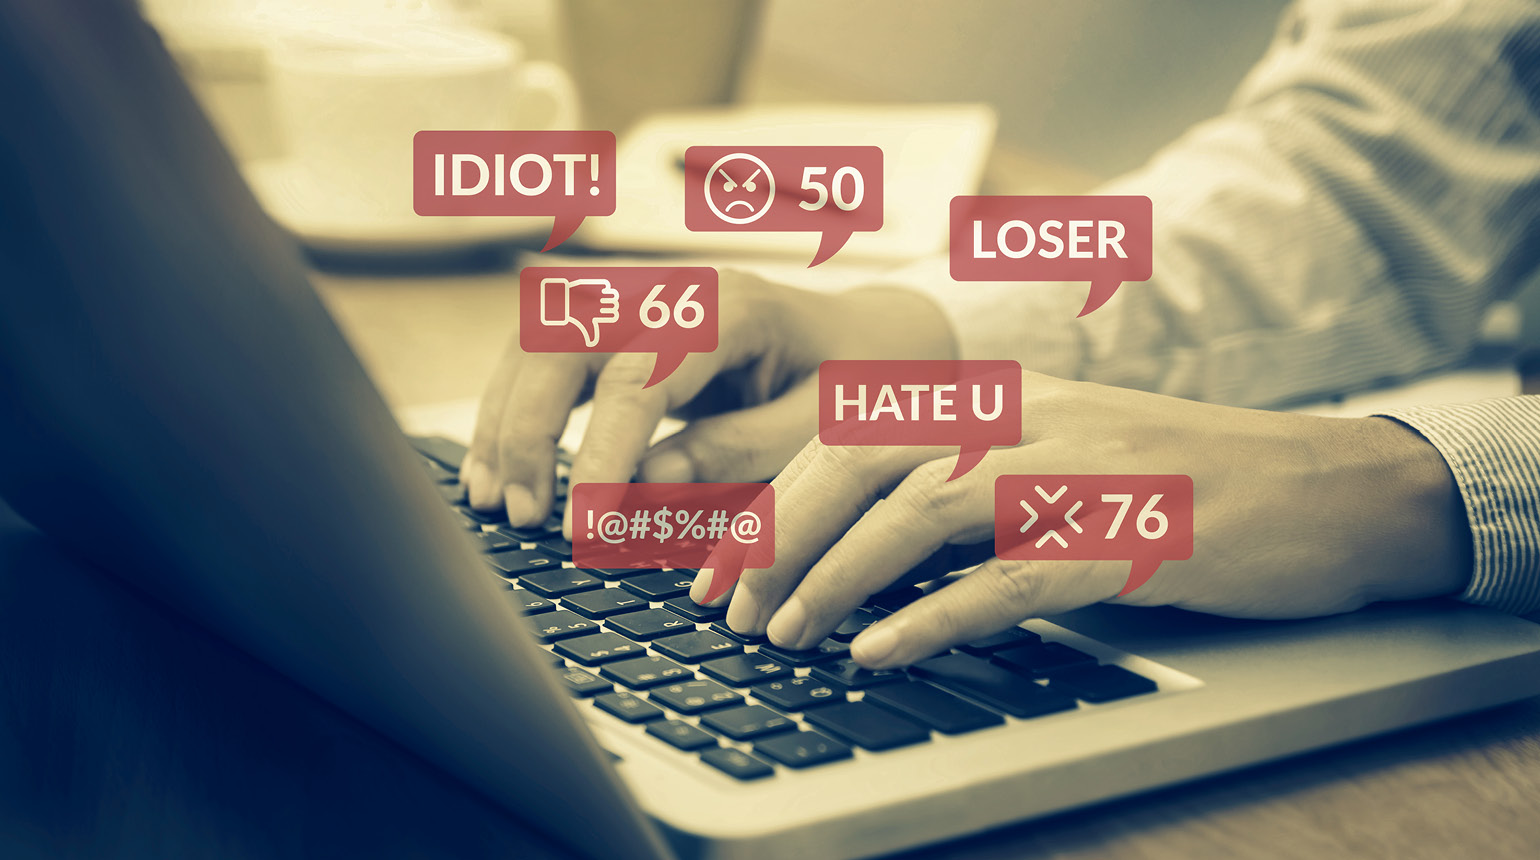 Symbolbild: Von einer Notebook-Tastatur steigen Begriffe wie „Hate you“, „Loser“ usw. auf.